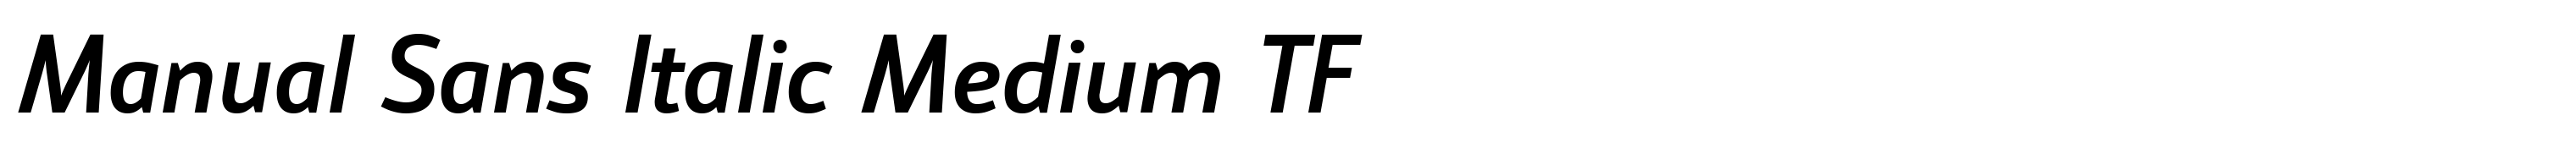 Manual Sans Italic Medium TF